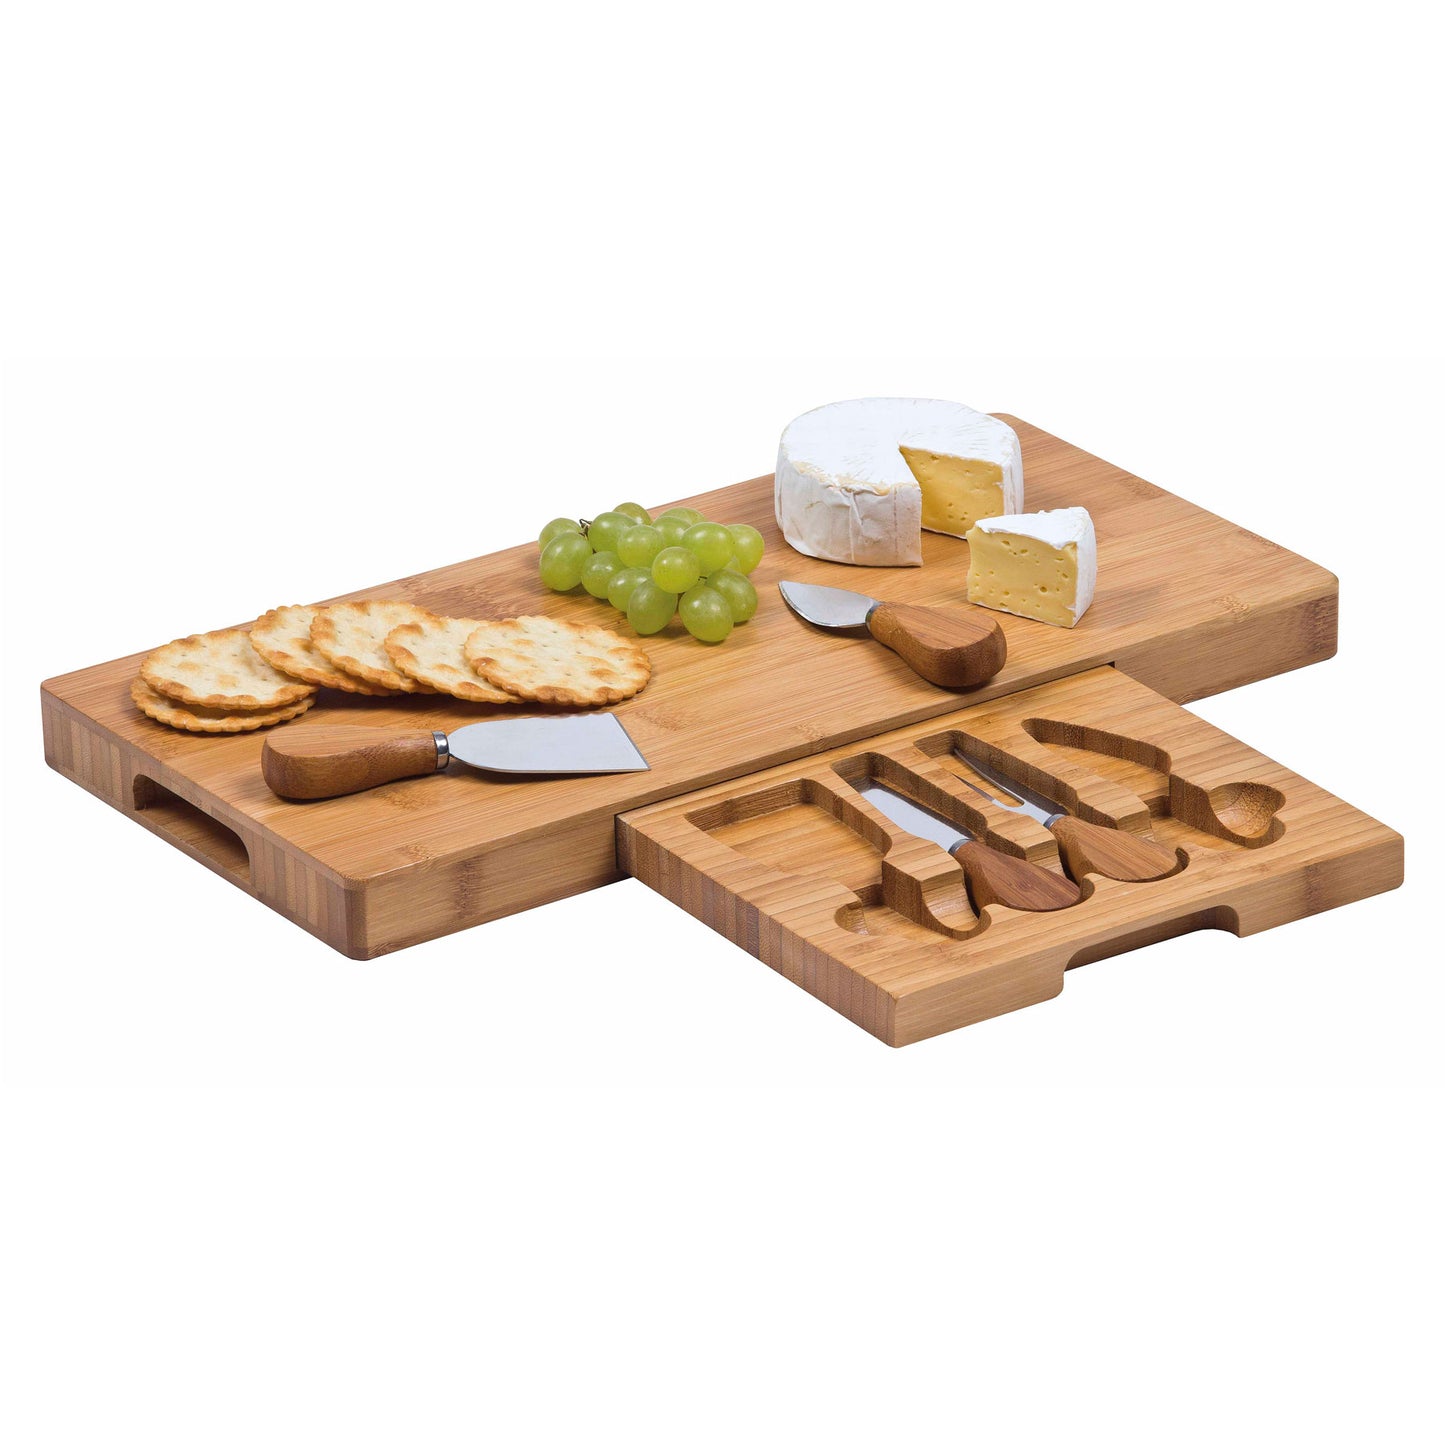 Personalised gourmet cheese board set